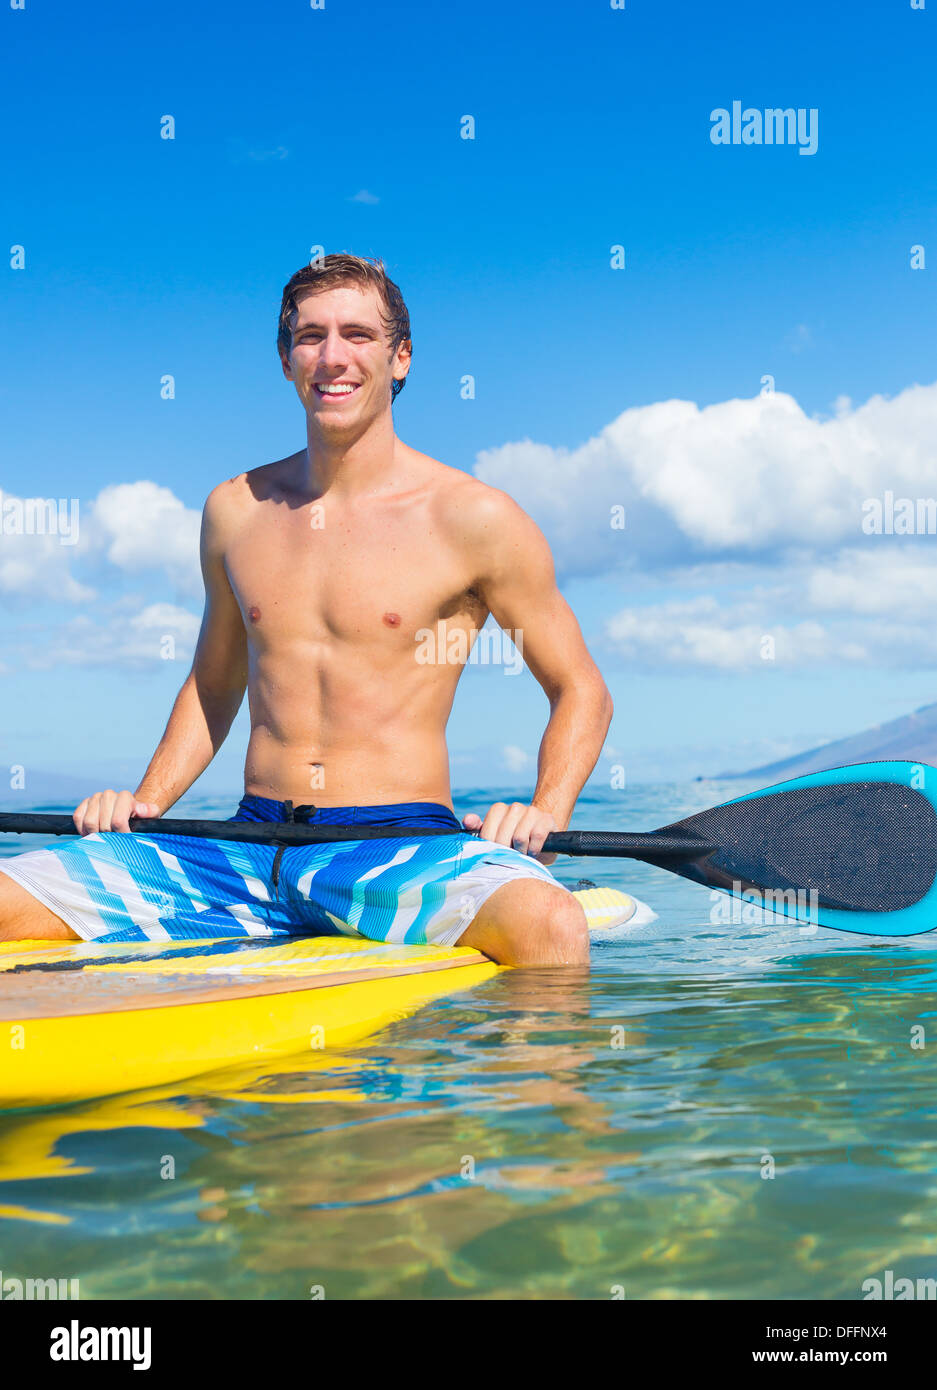 Attraktive junge Mann Stand Up Paddle Surfen In Hawaii, schönen tropischen Ozean aktiv Strand Lebensstil Stockfoto